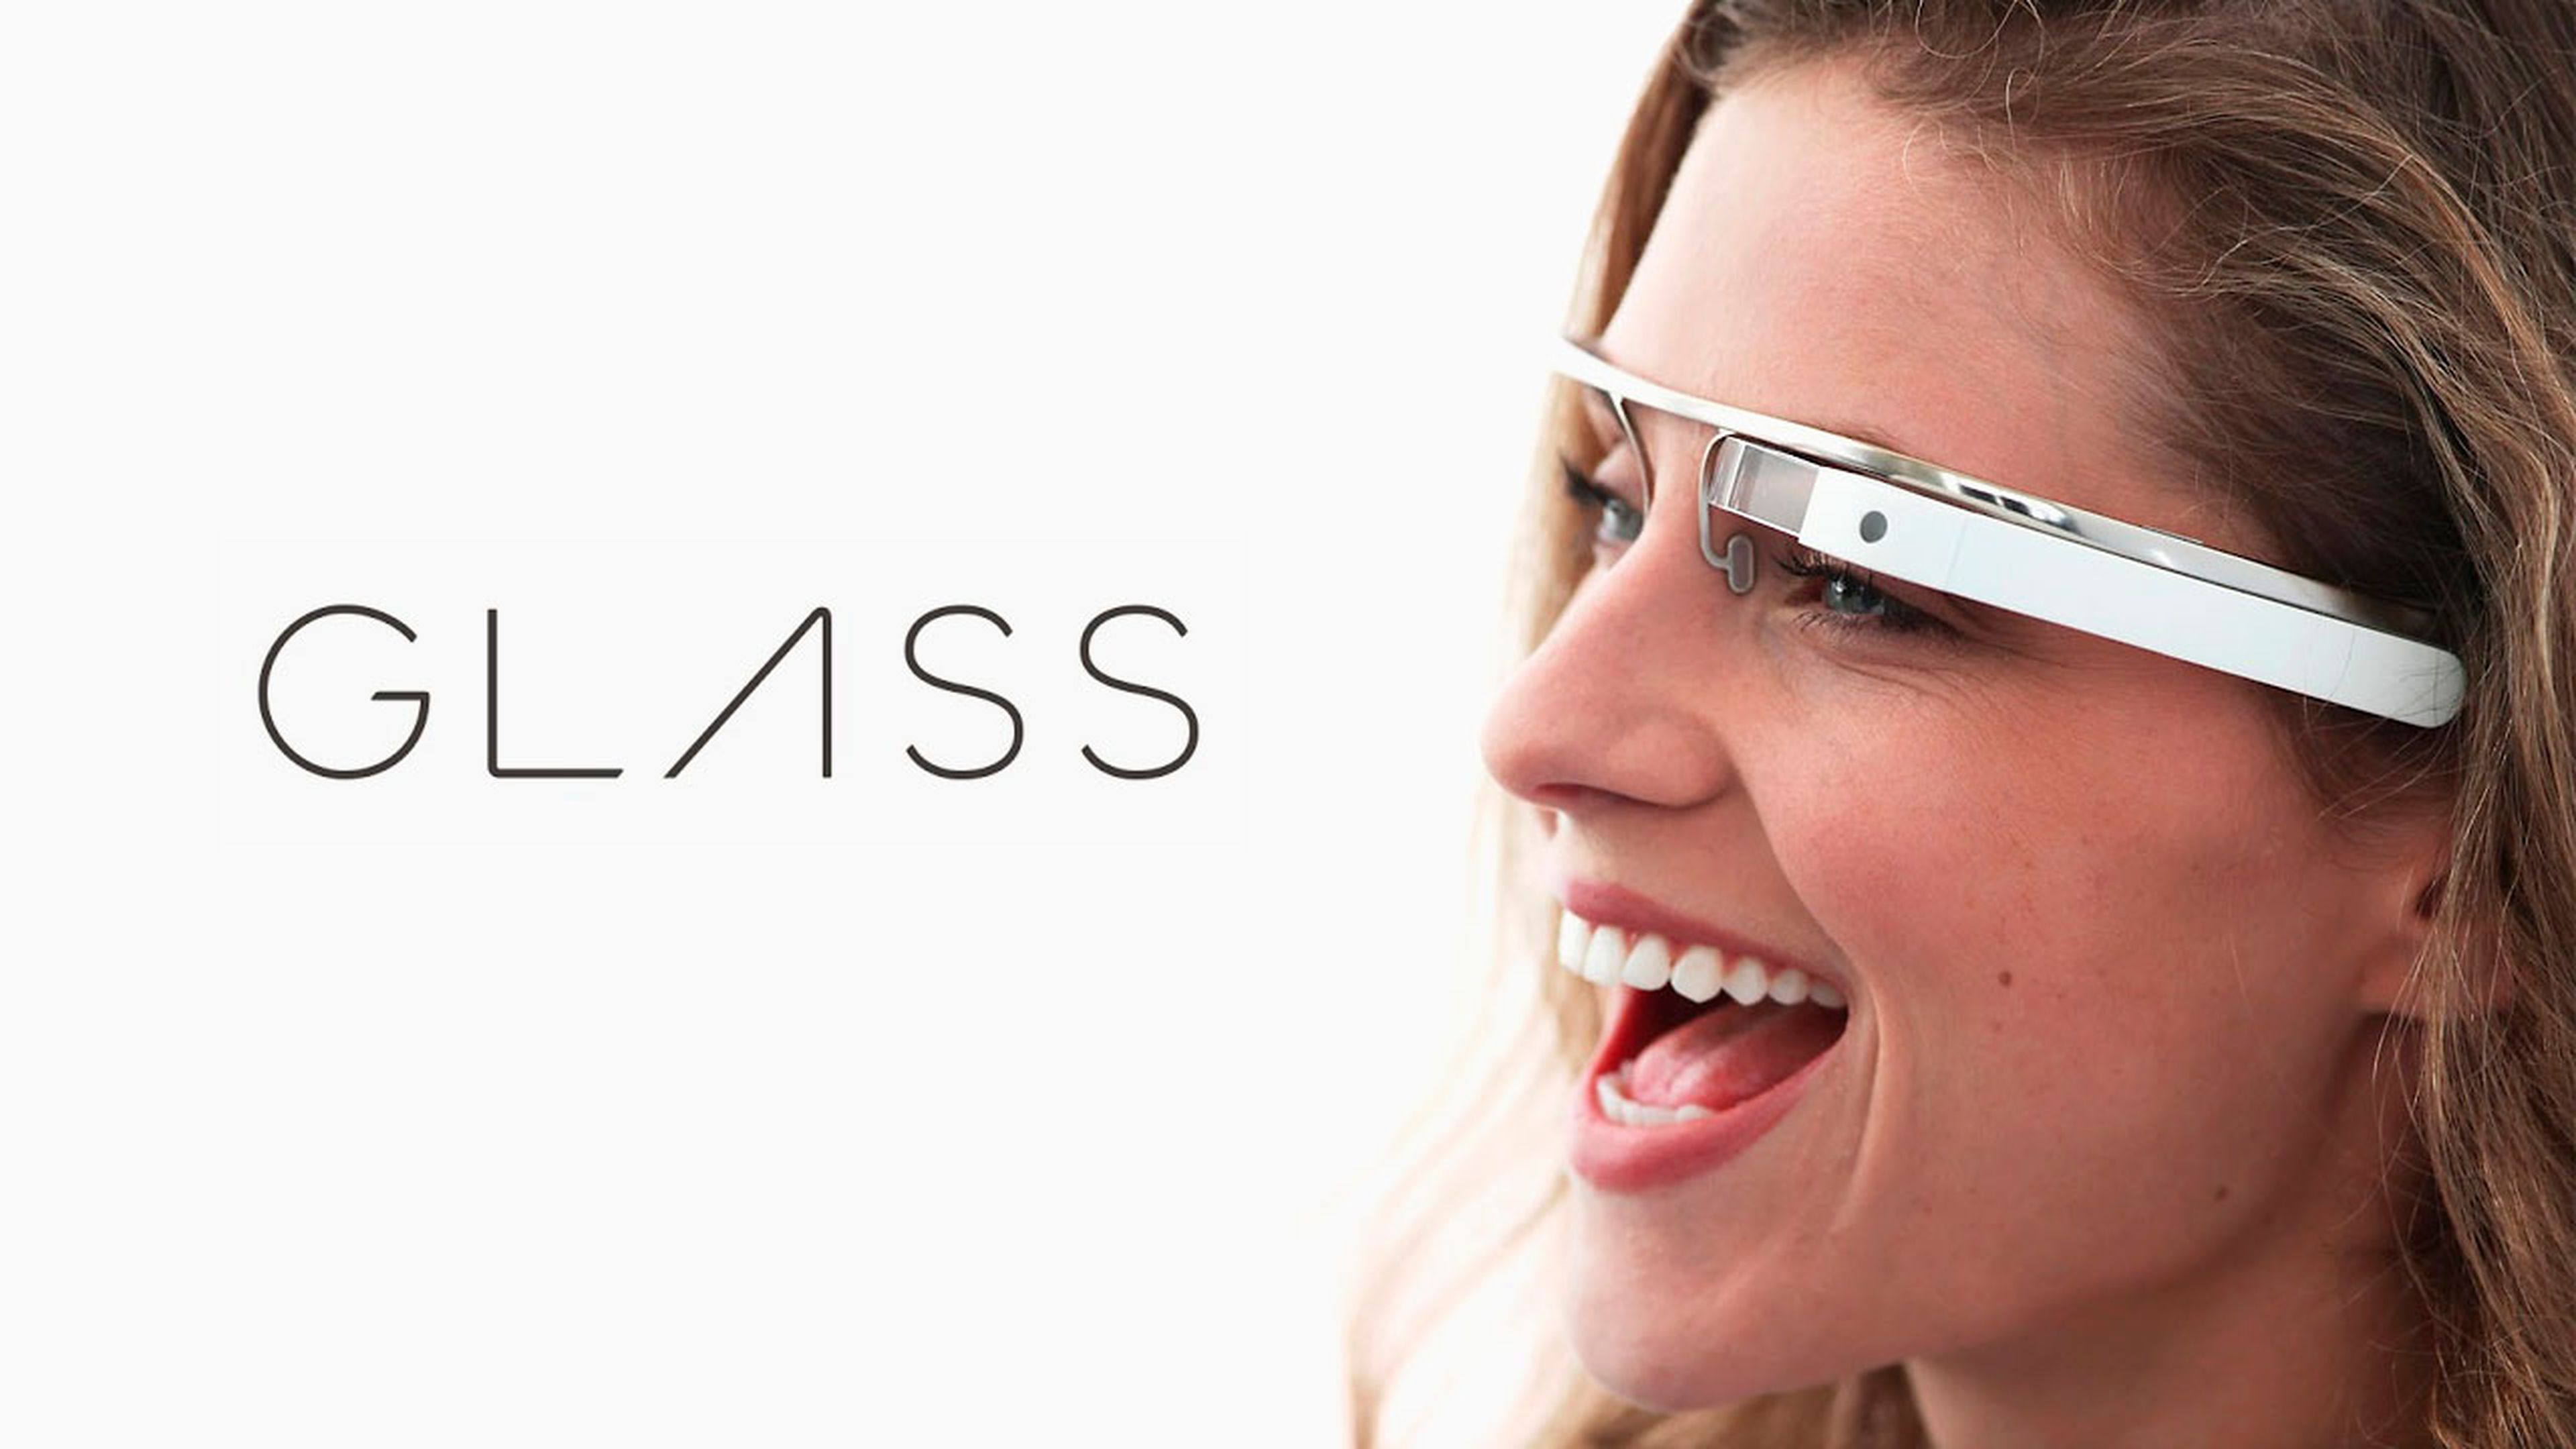 Google Glass, el dispositivo de realidad aumentada de Google, se podrá probar en la feria